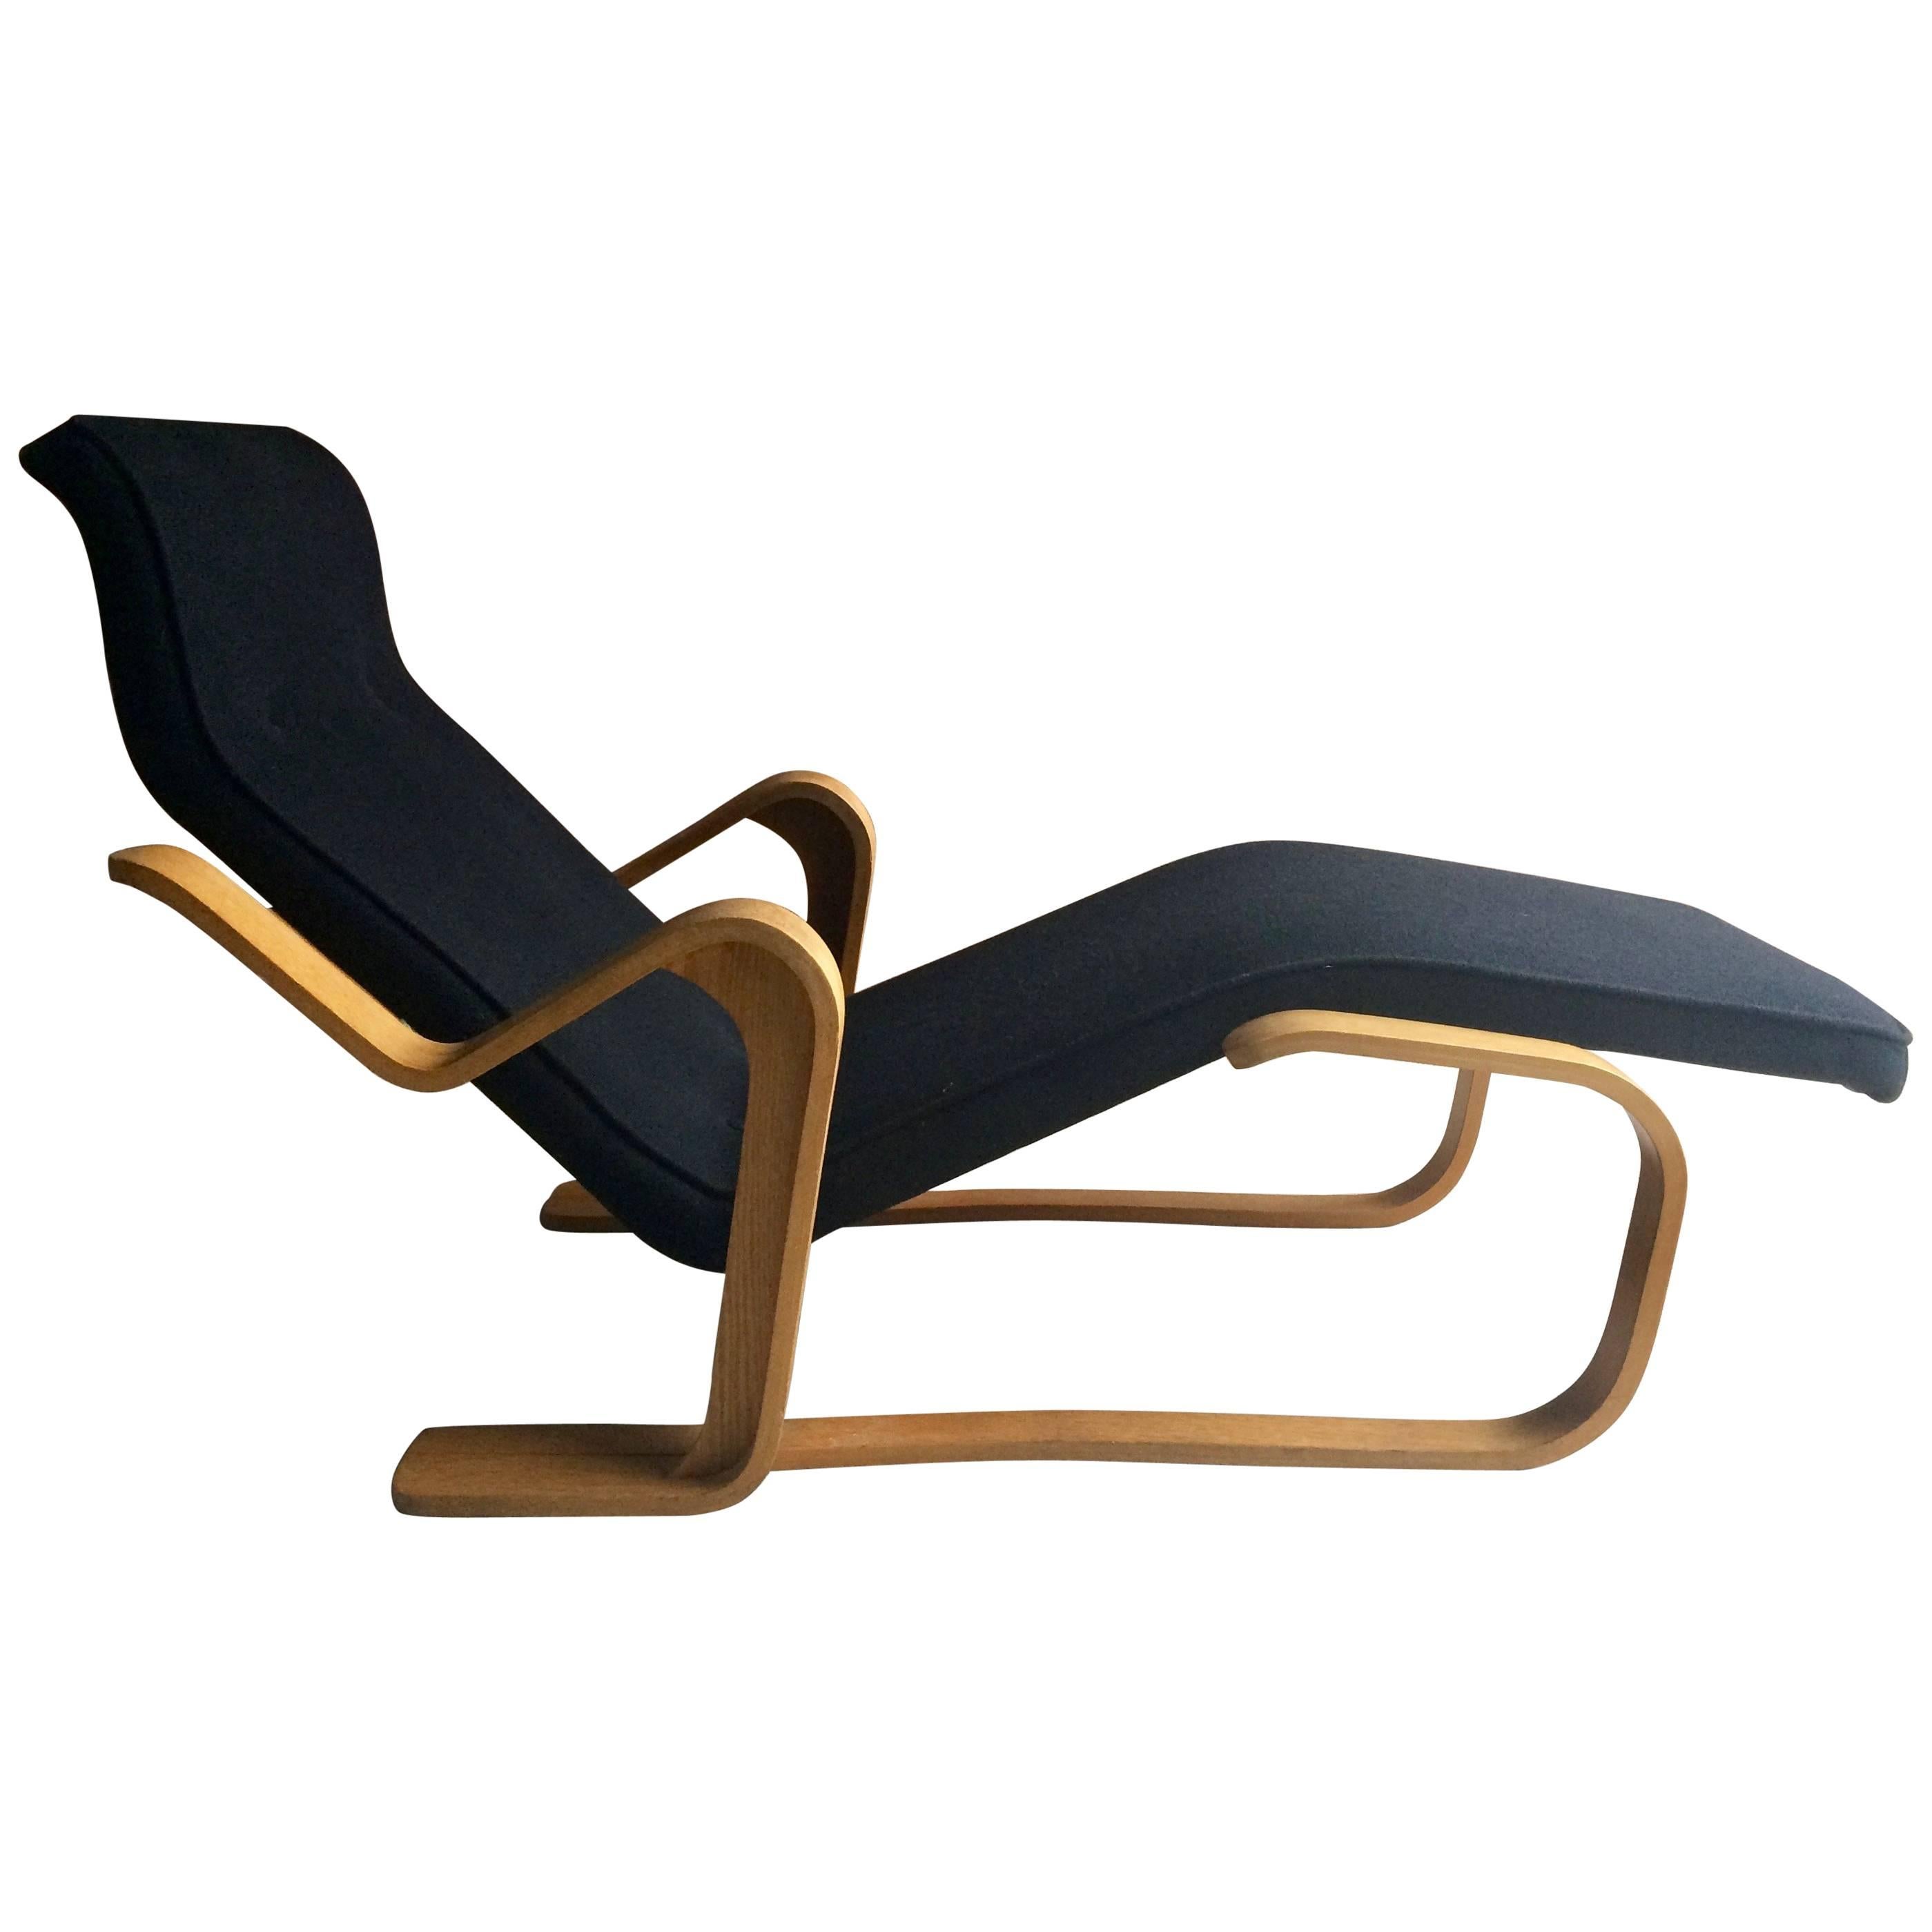 Marcel Breuer Long Chair Chaise Longue Black Midcentury 1970s Bauhaus No. 3